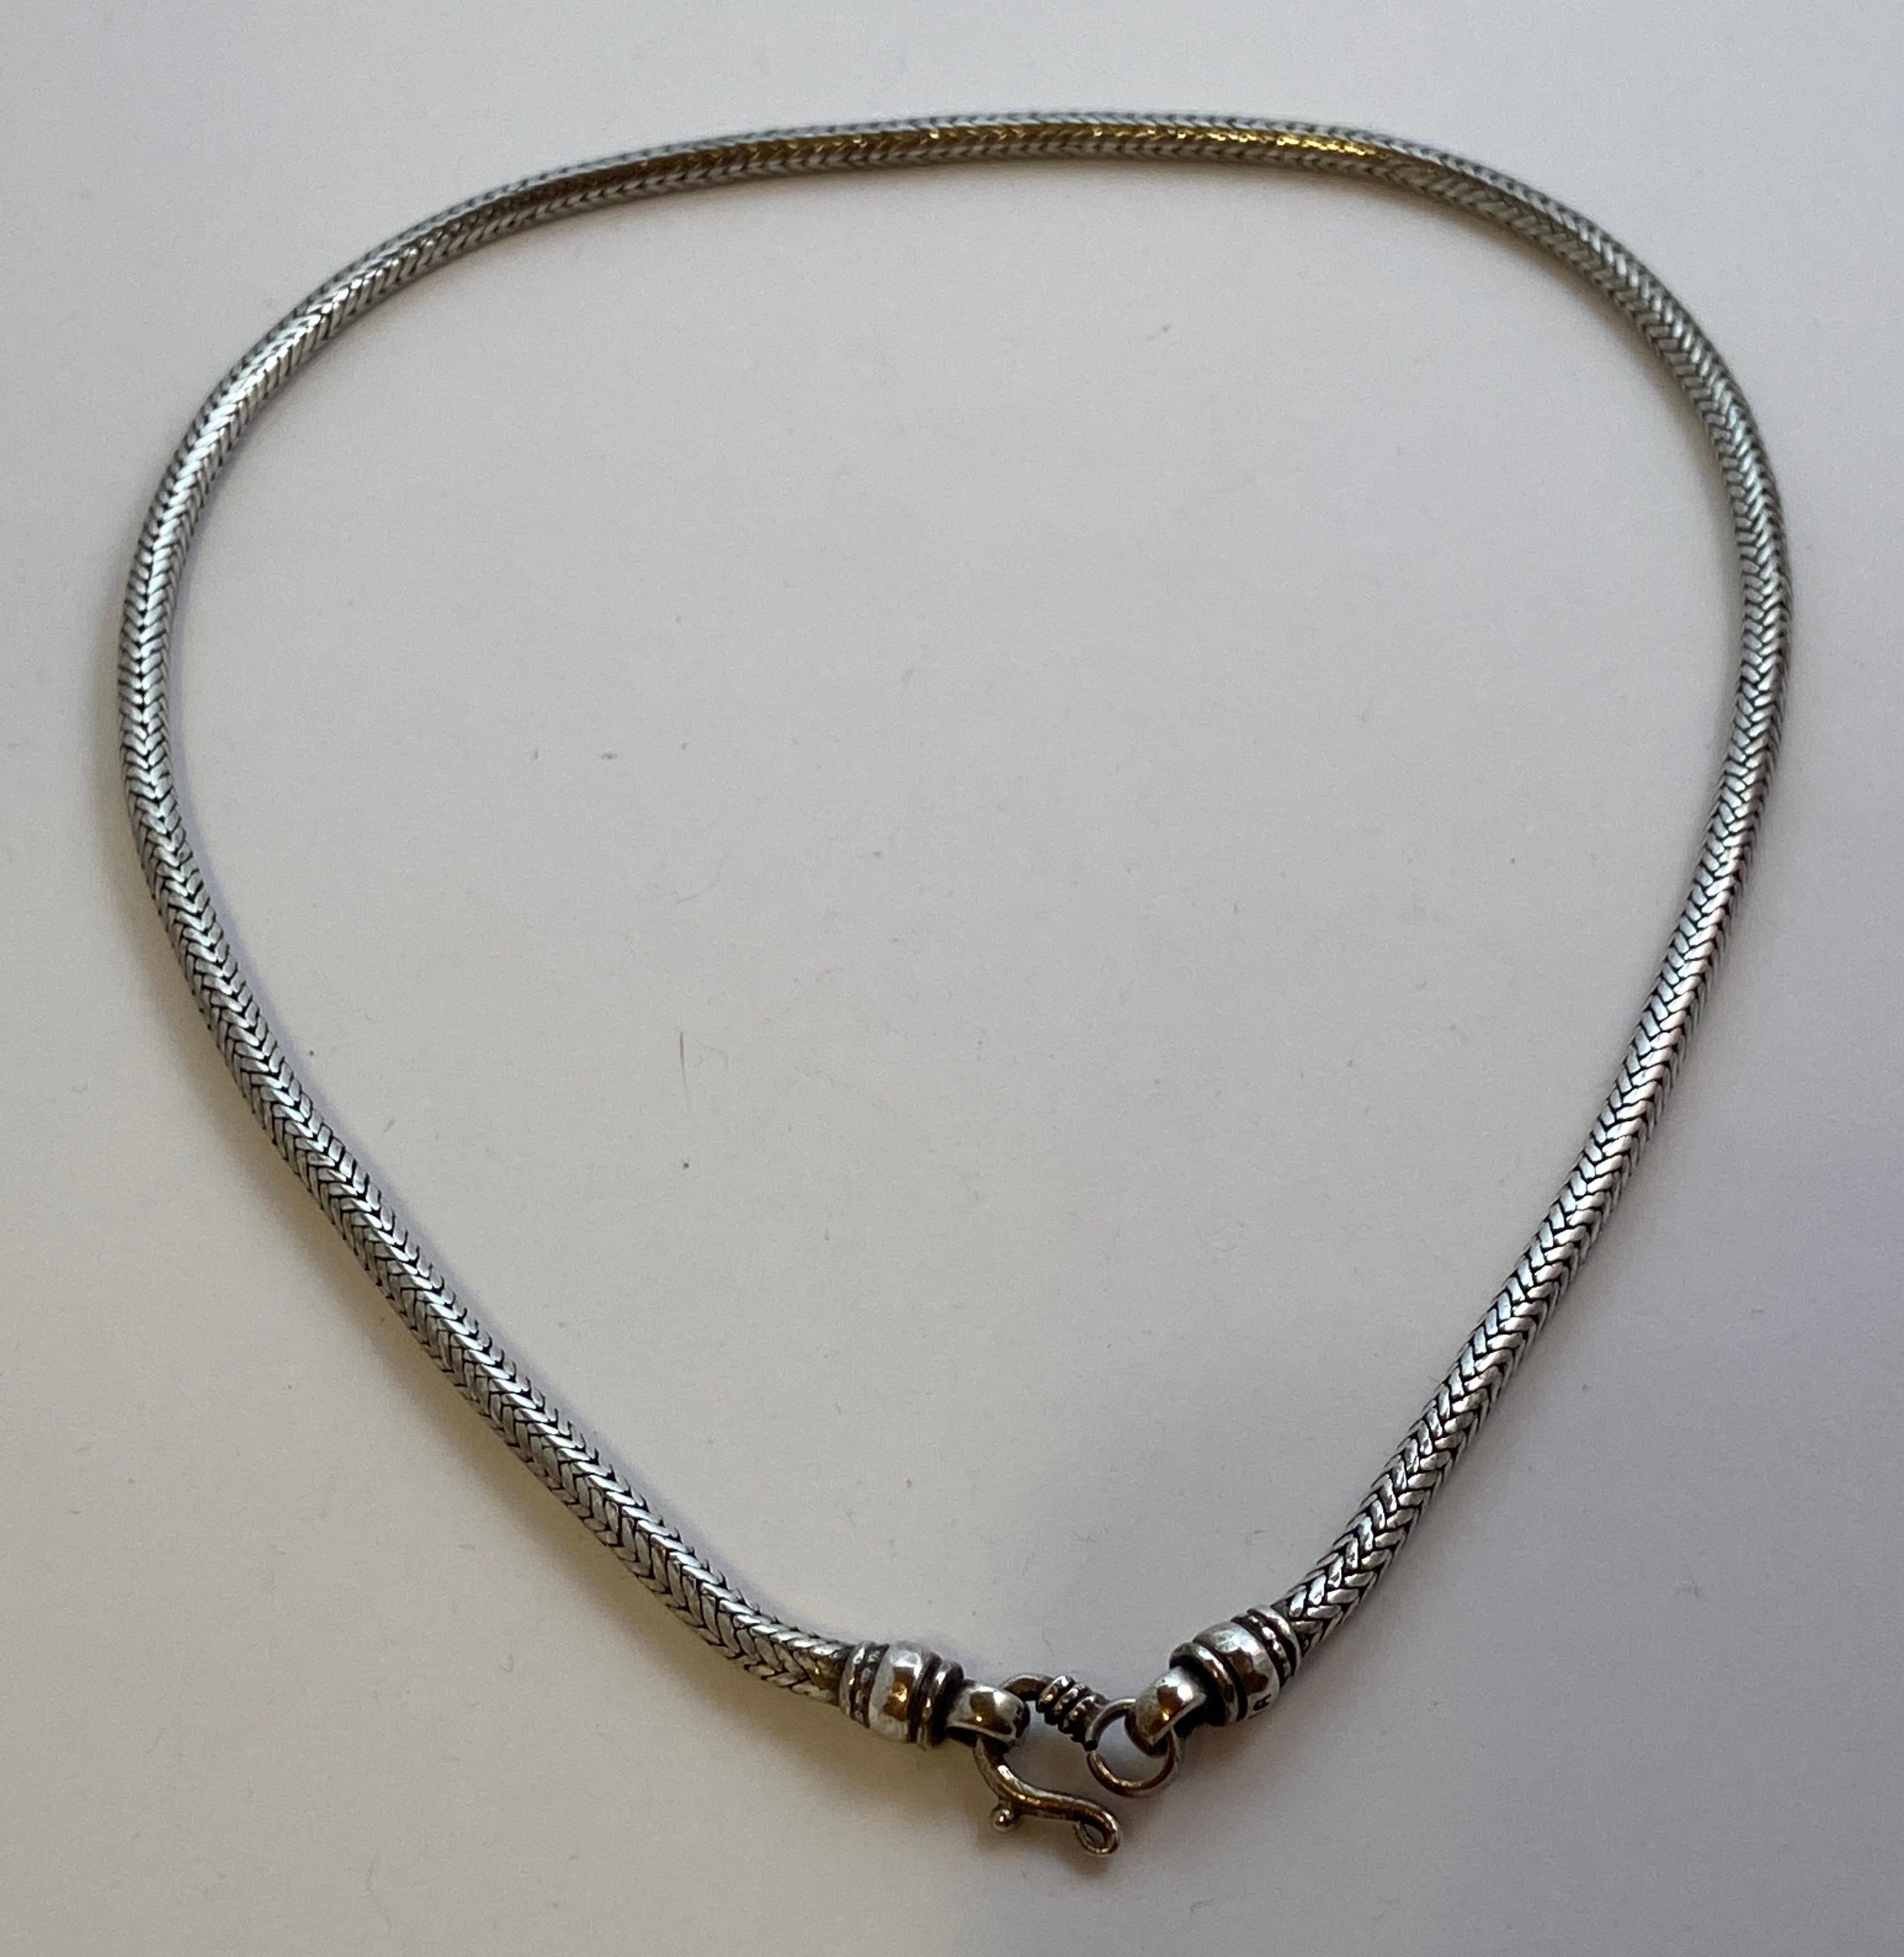 Halskette aus Sterlingsilber mit stark glatten Schlangengliedern und Herstellermarke: RA 
Die Gesamtlänge beträgt 18 2/8 Zoll, der Umfang beträgt 2/8 Zoll. Hergestellt in den USA